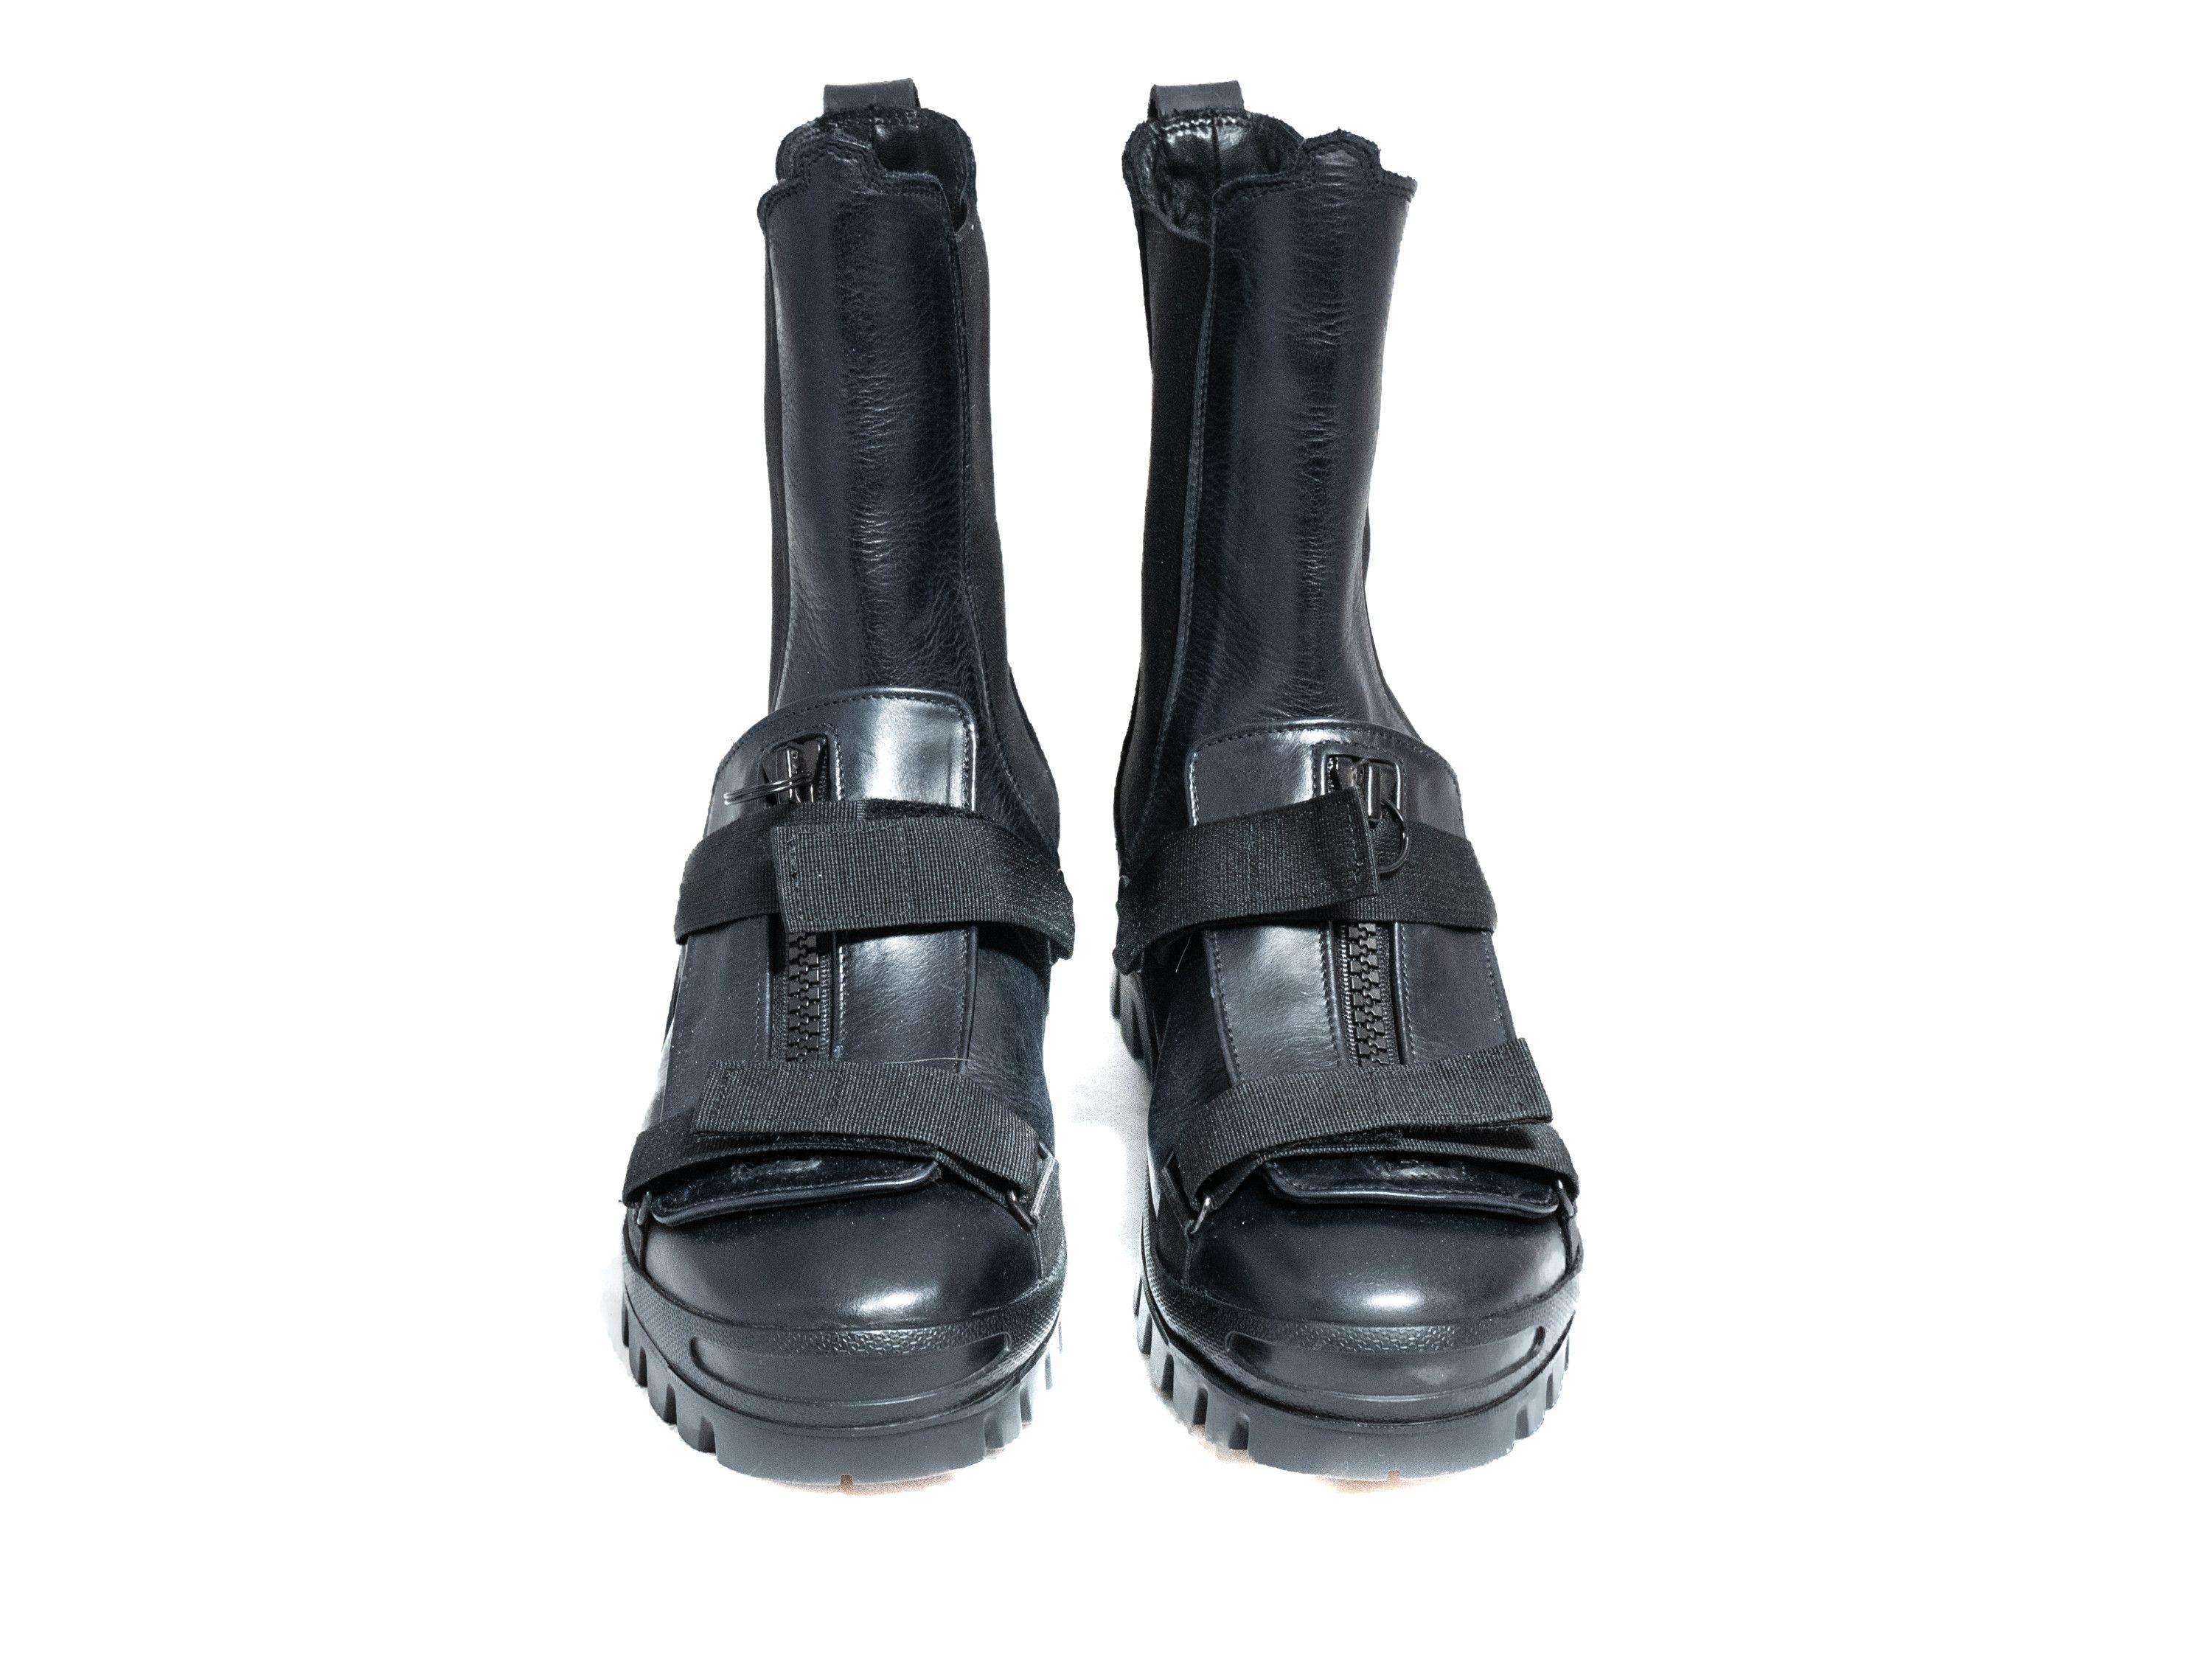 Soderberg Richard Soderberg Repeater boots | Grailed